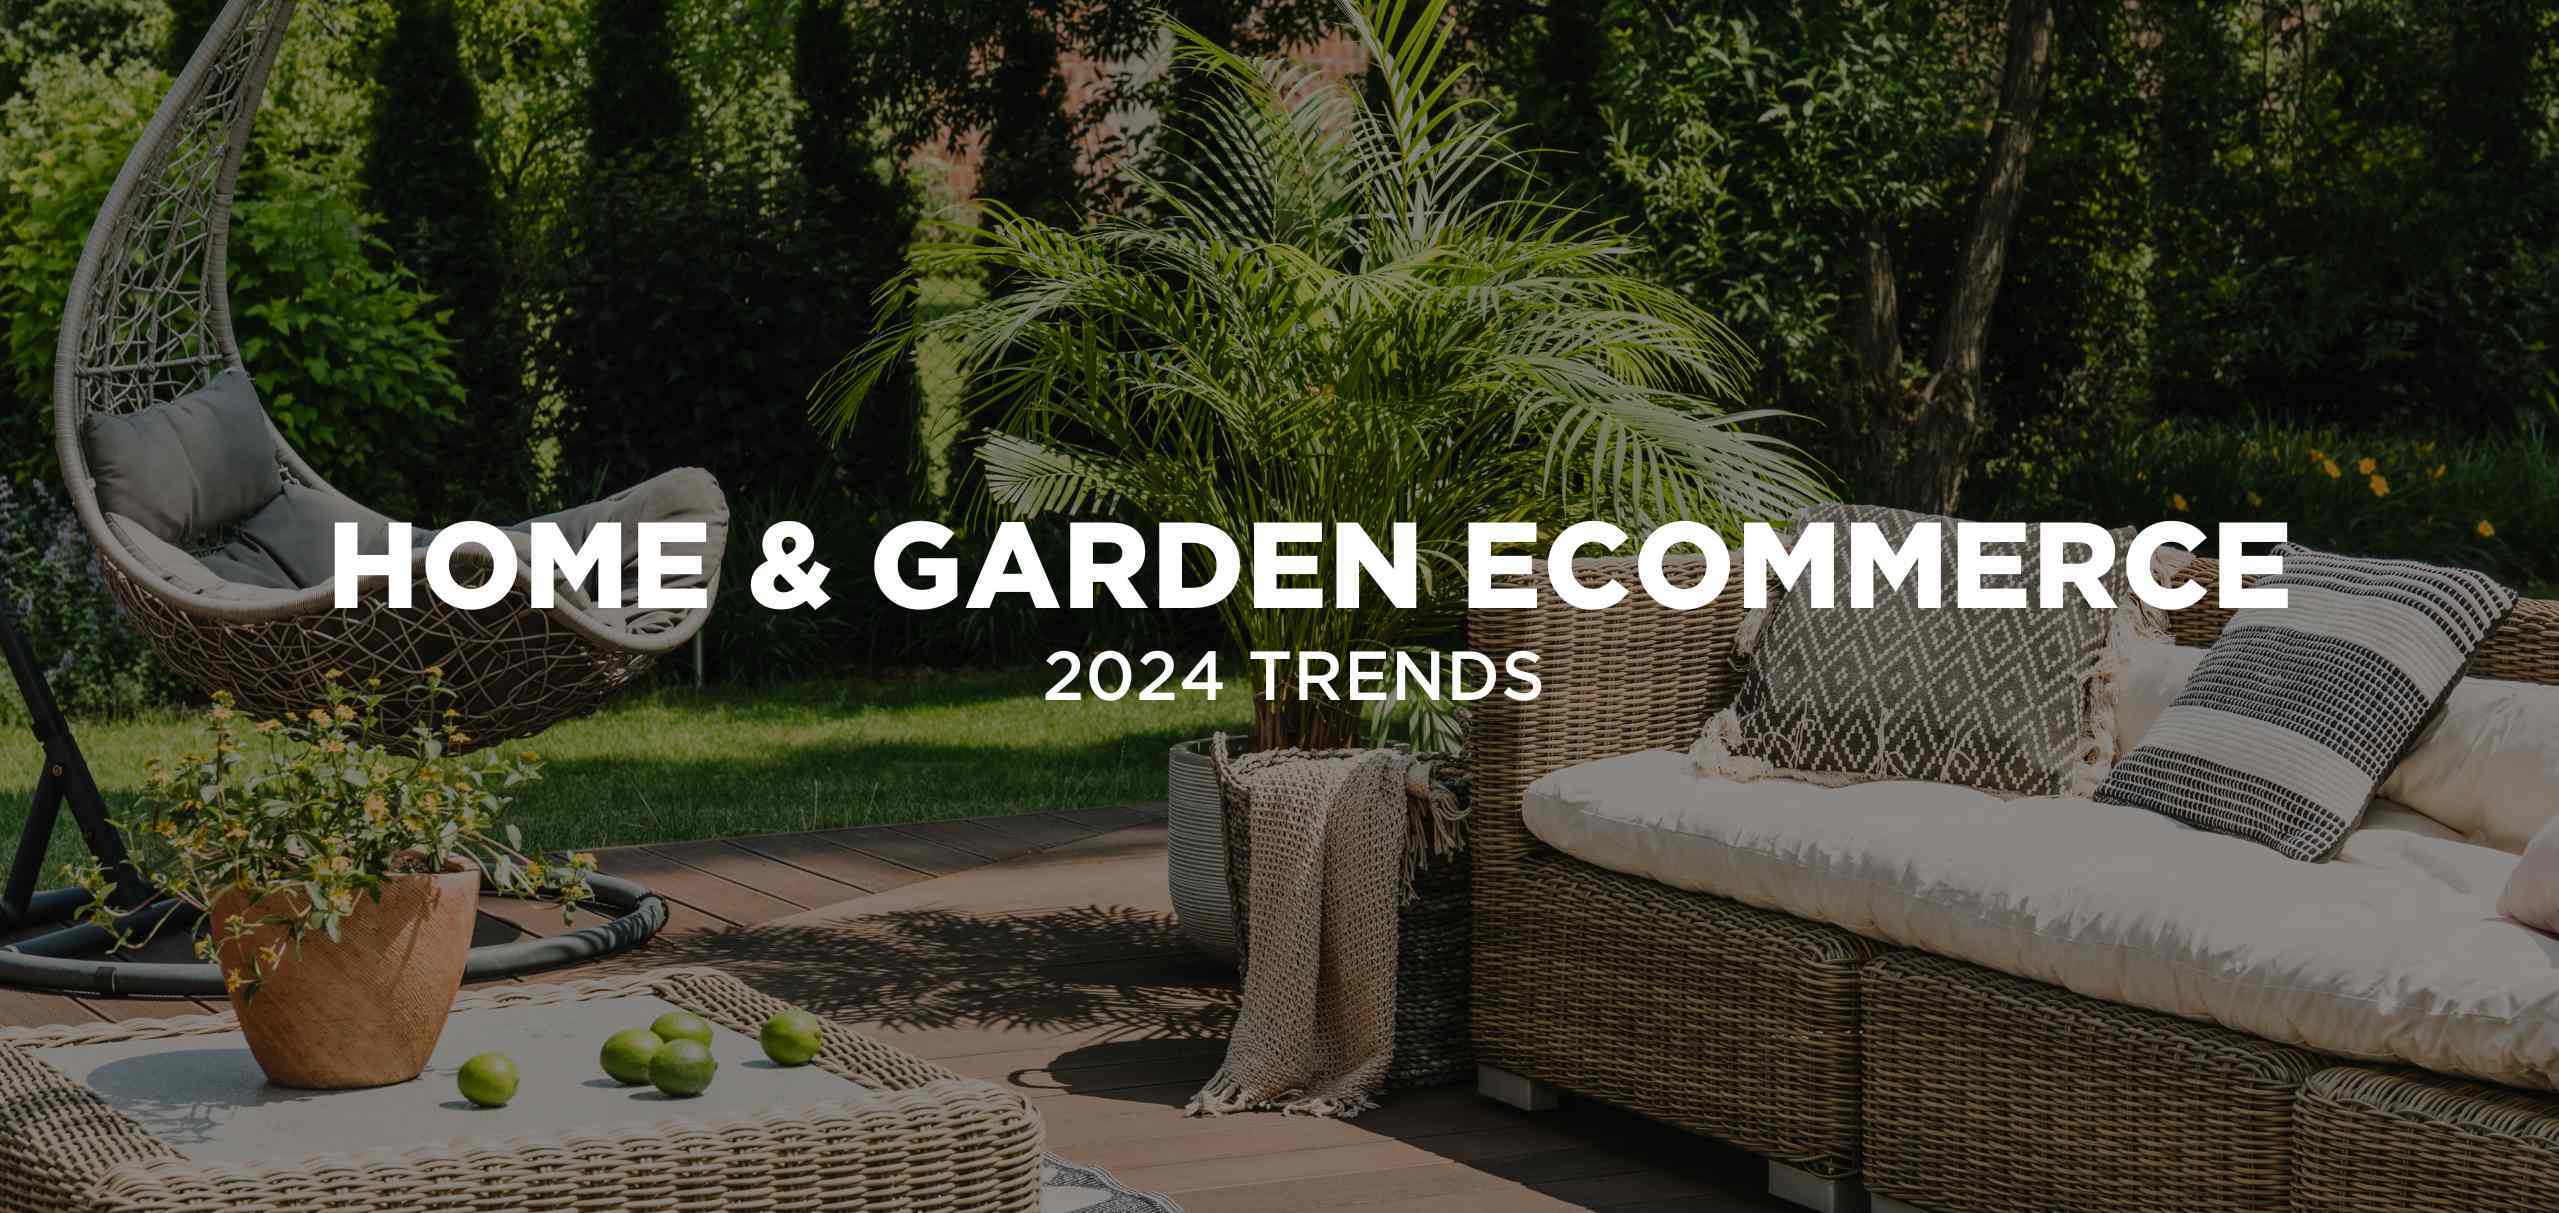 Home & Garden Ecommerce Trends in 2024